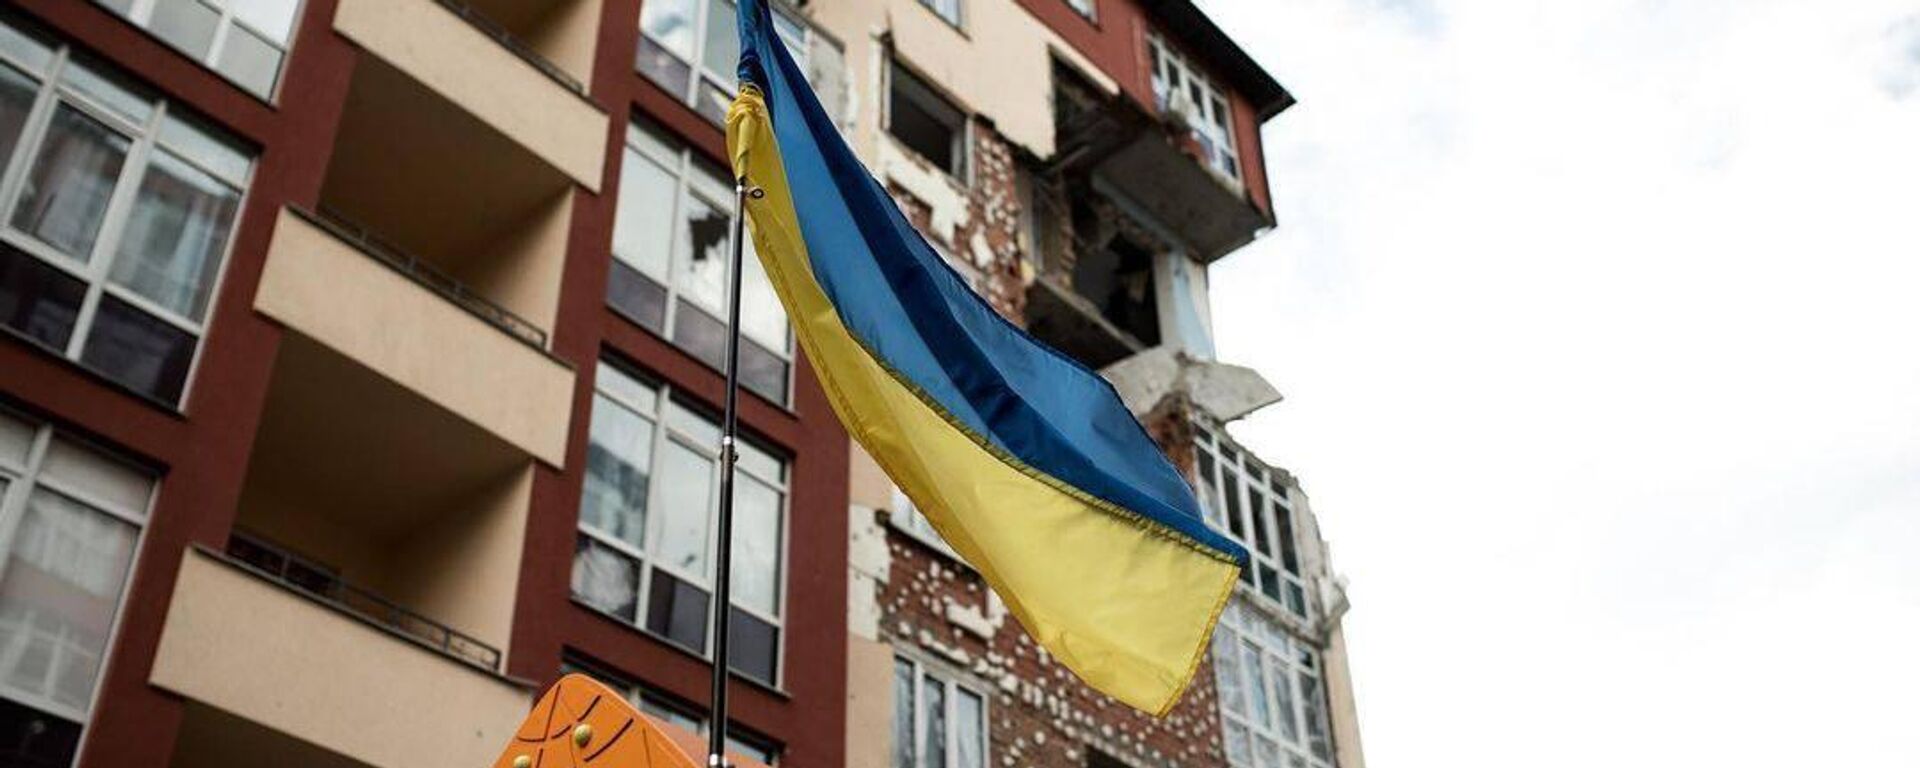 La bandera de Ucrania ondeando en un barrio. - Sputnik Mundo, 1920, 27.08.2022